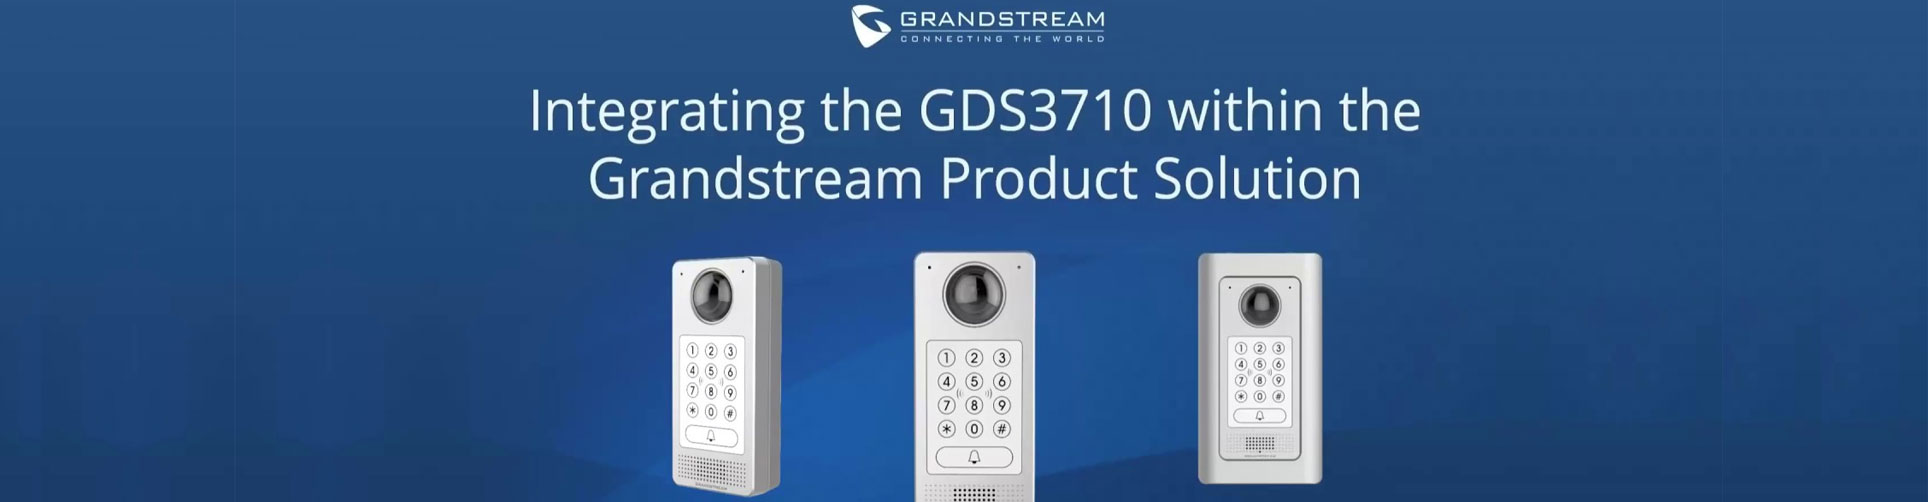 Grandstream Video Solutions